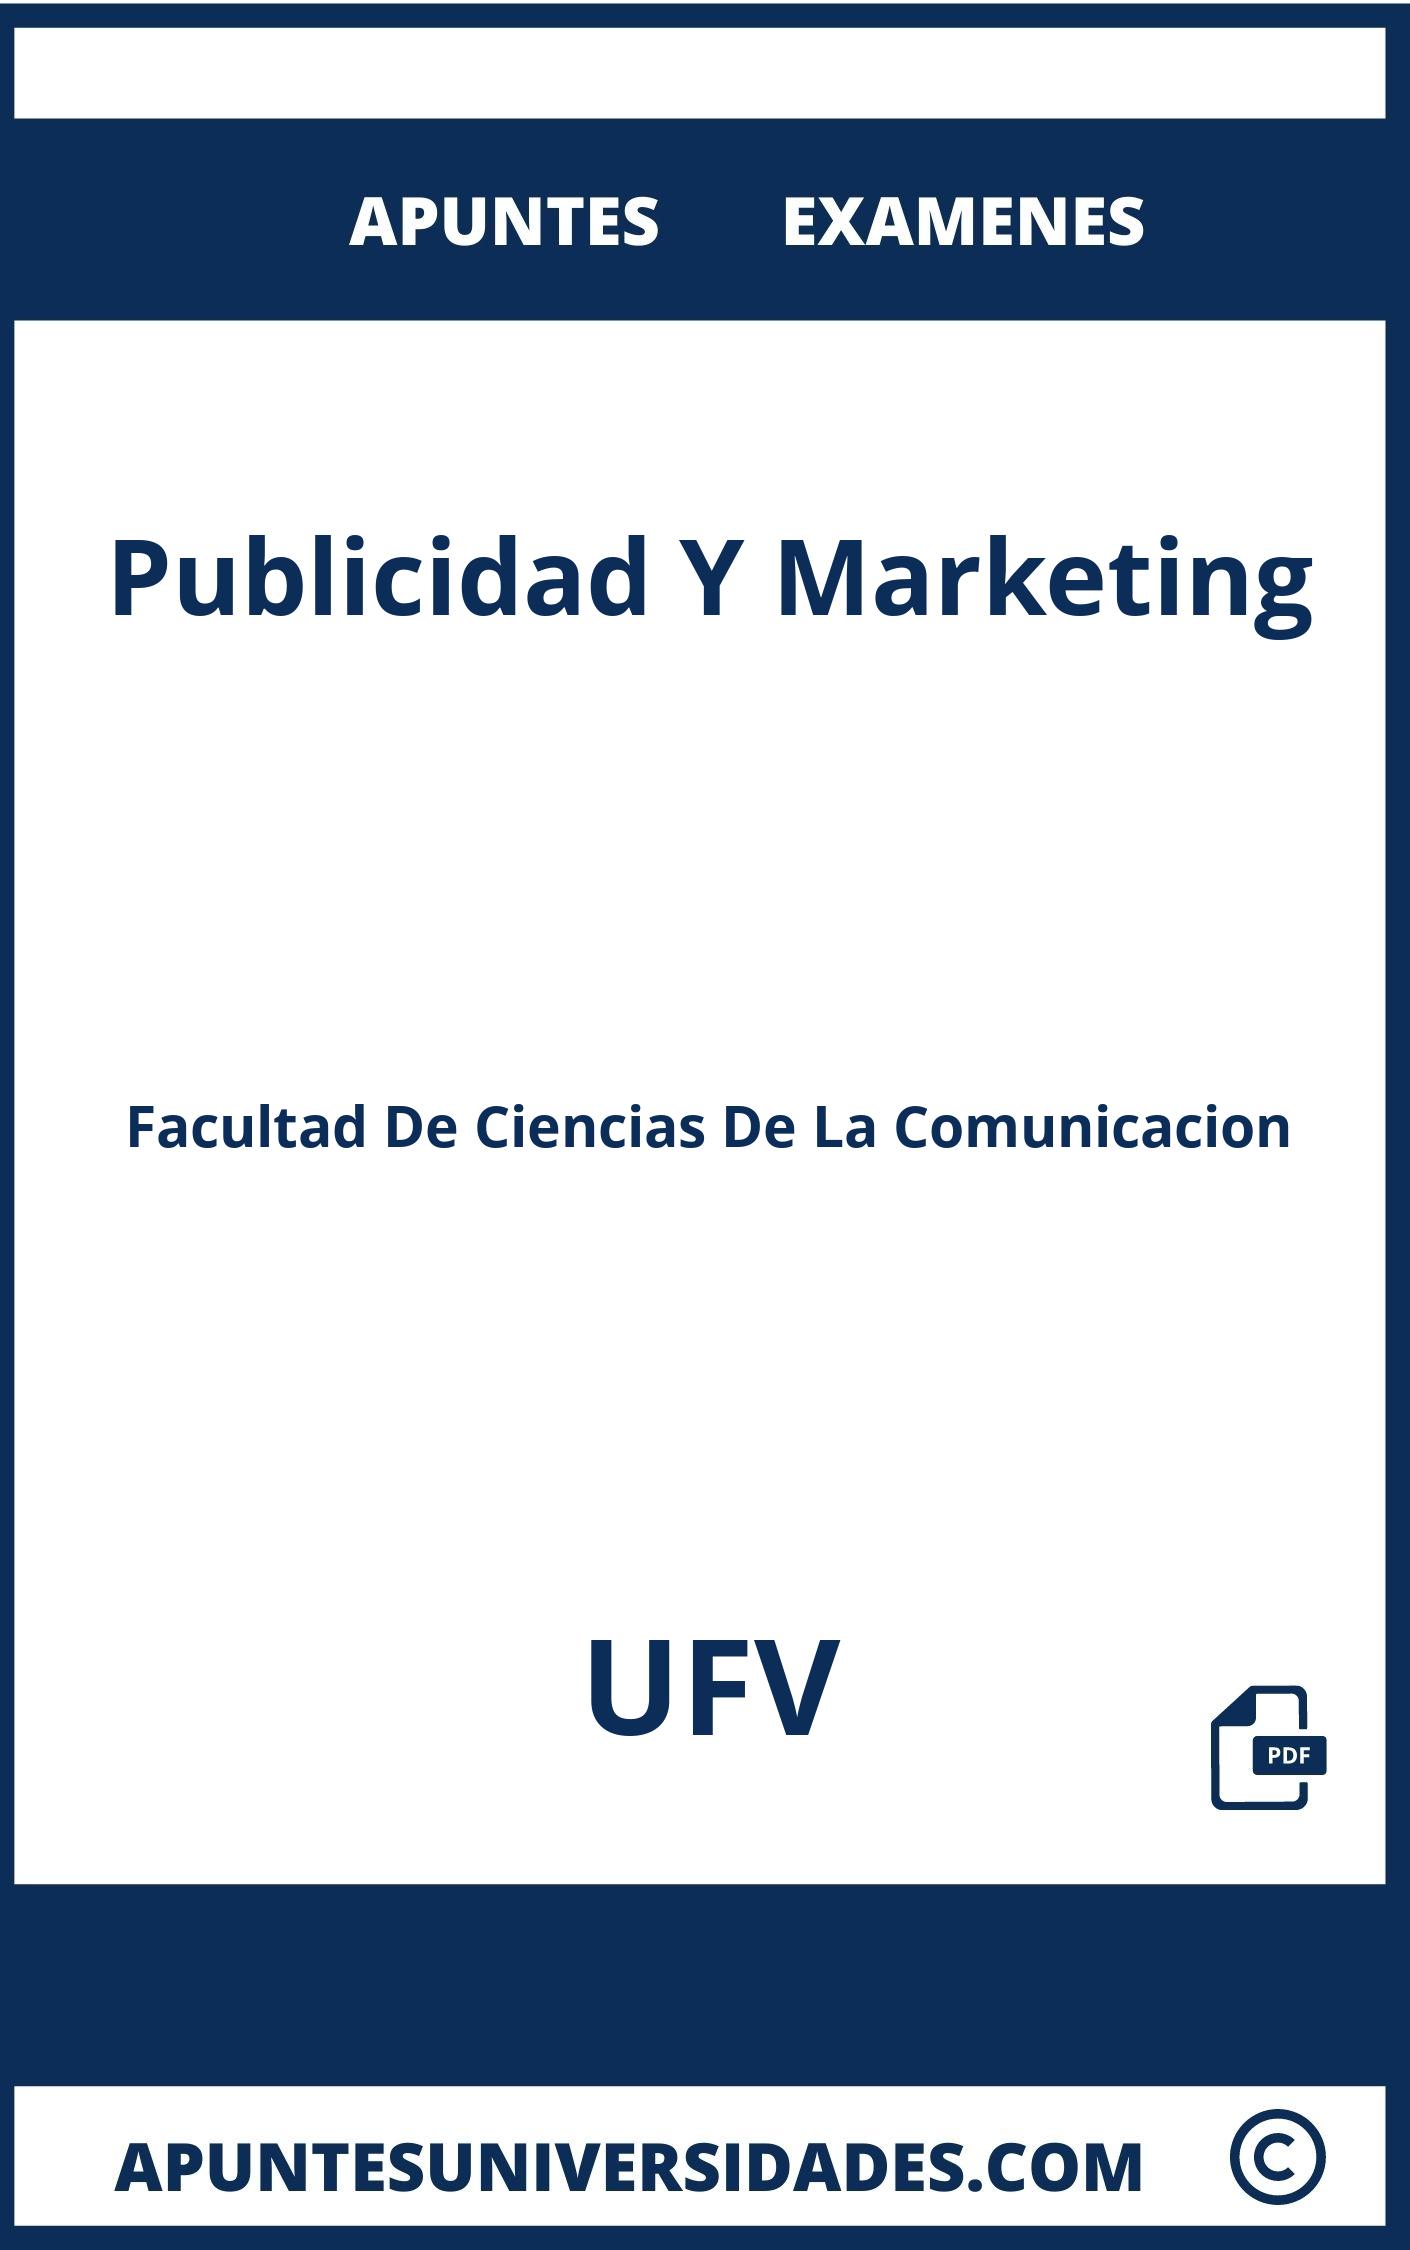 Examenes y Apuntes Publicidad Y Marketing UFV